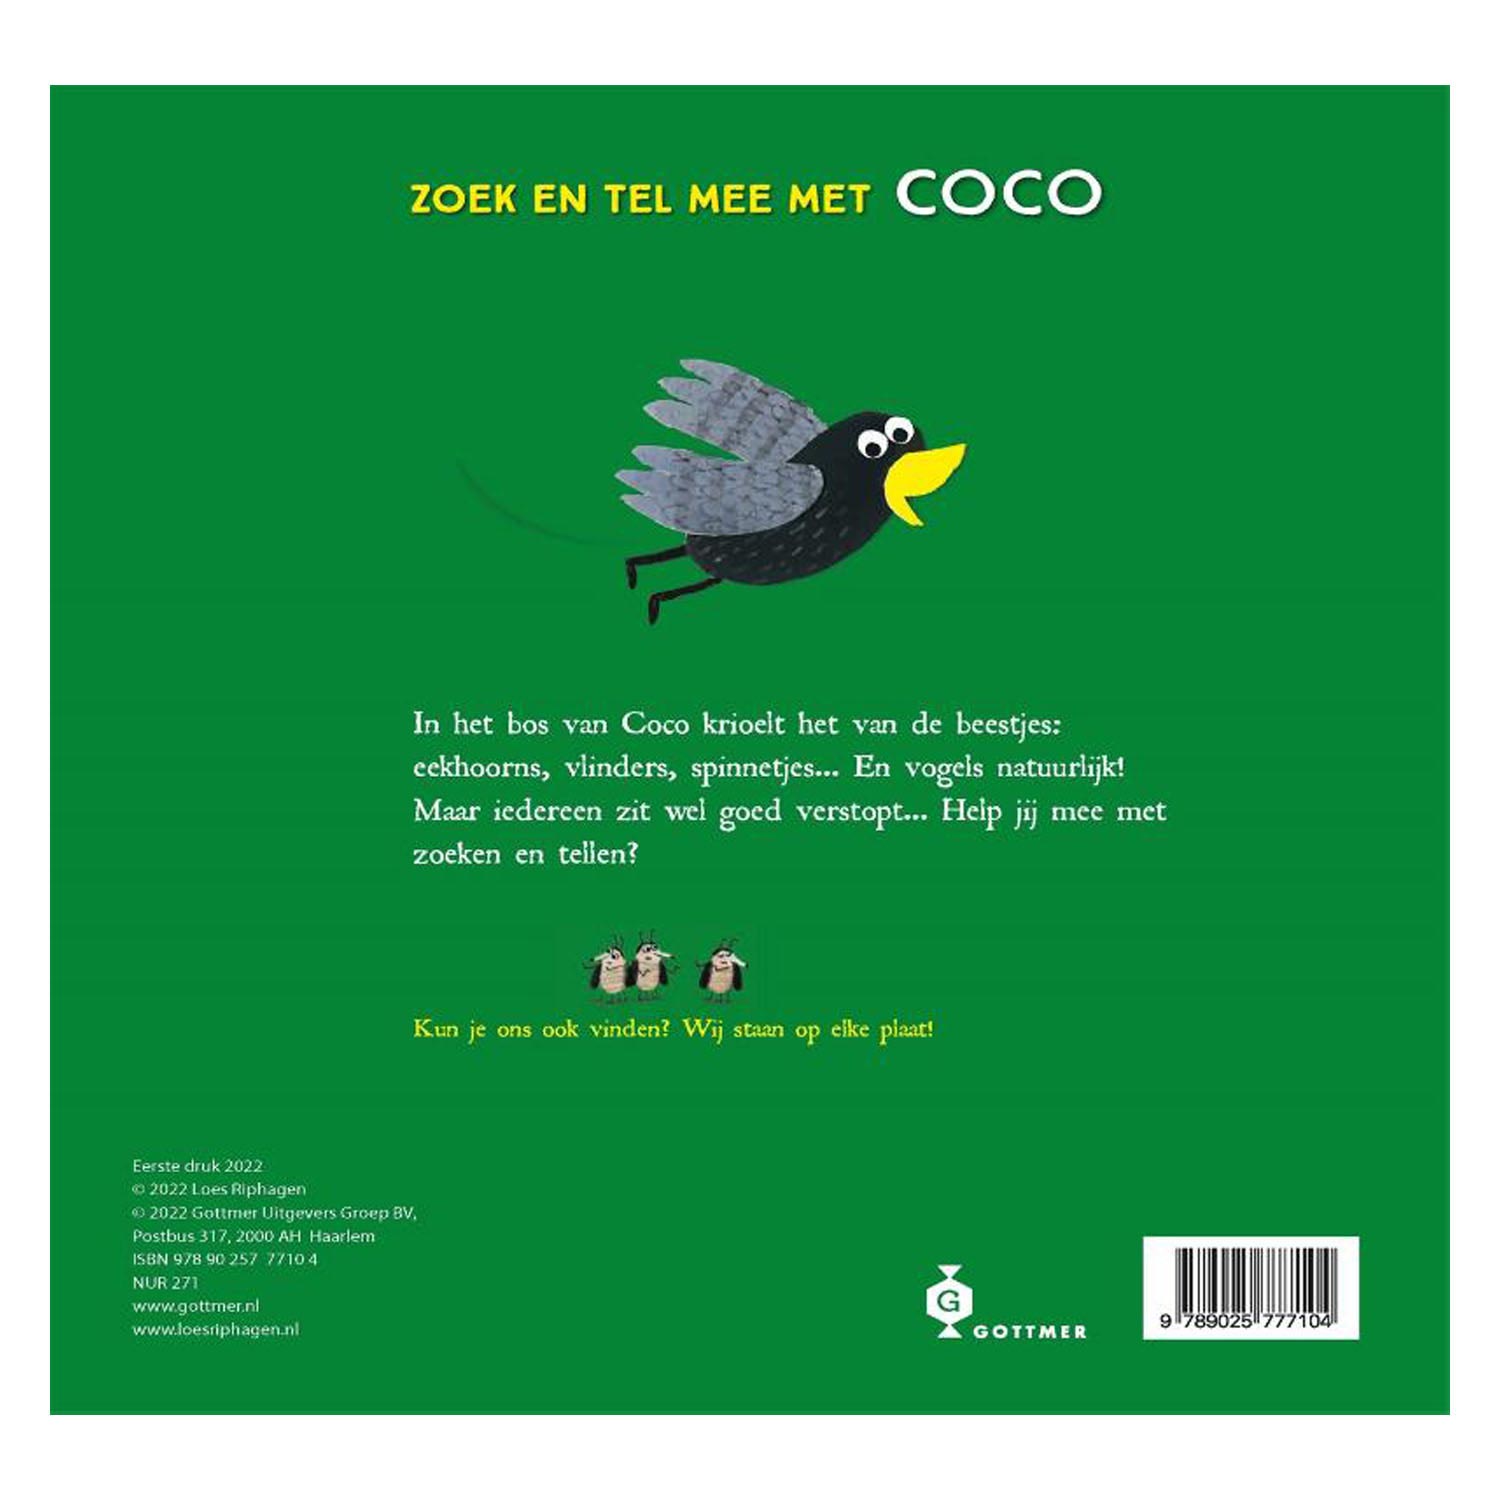 Das Coco Forest Zähl- und Suchbuch